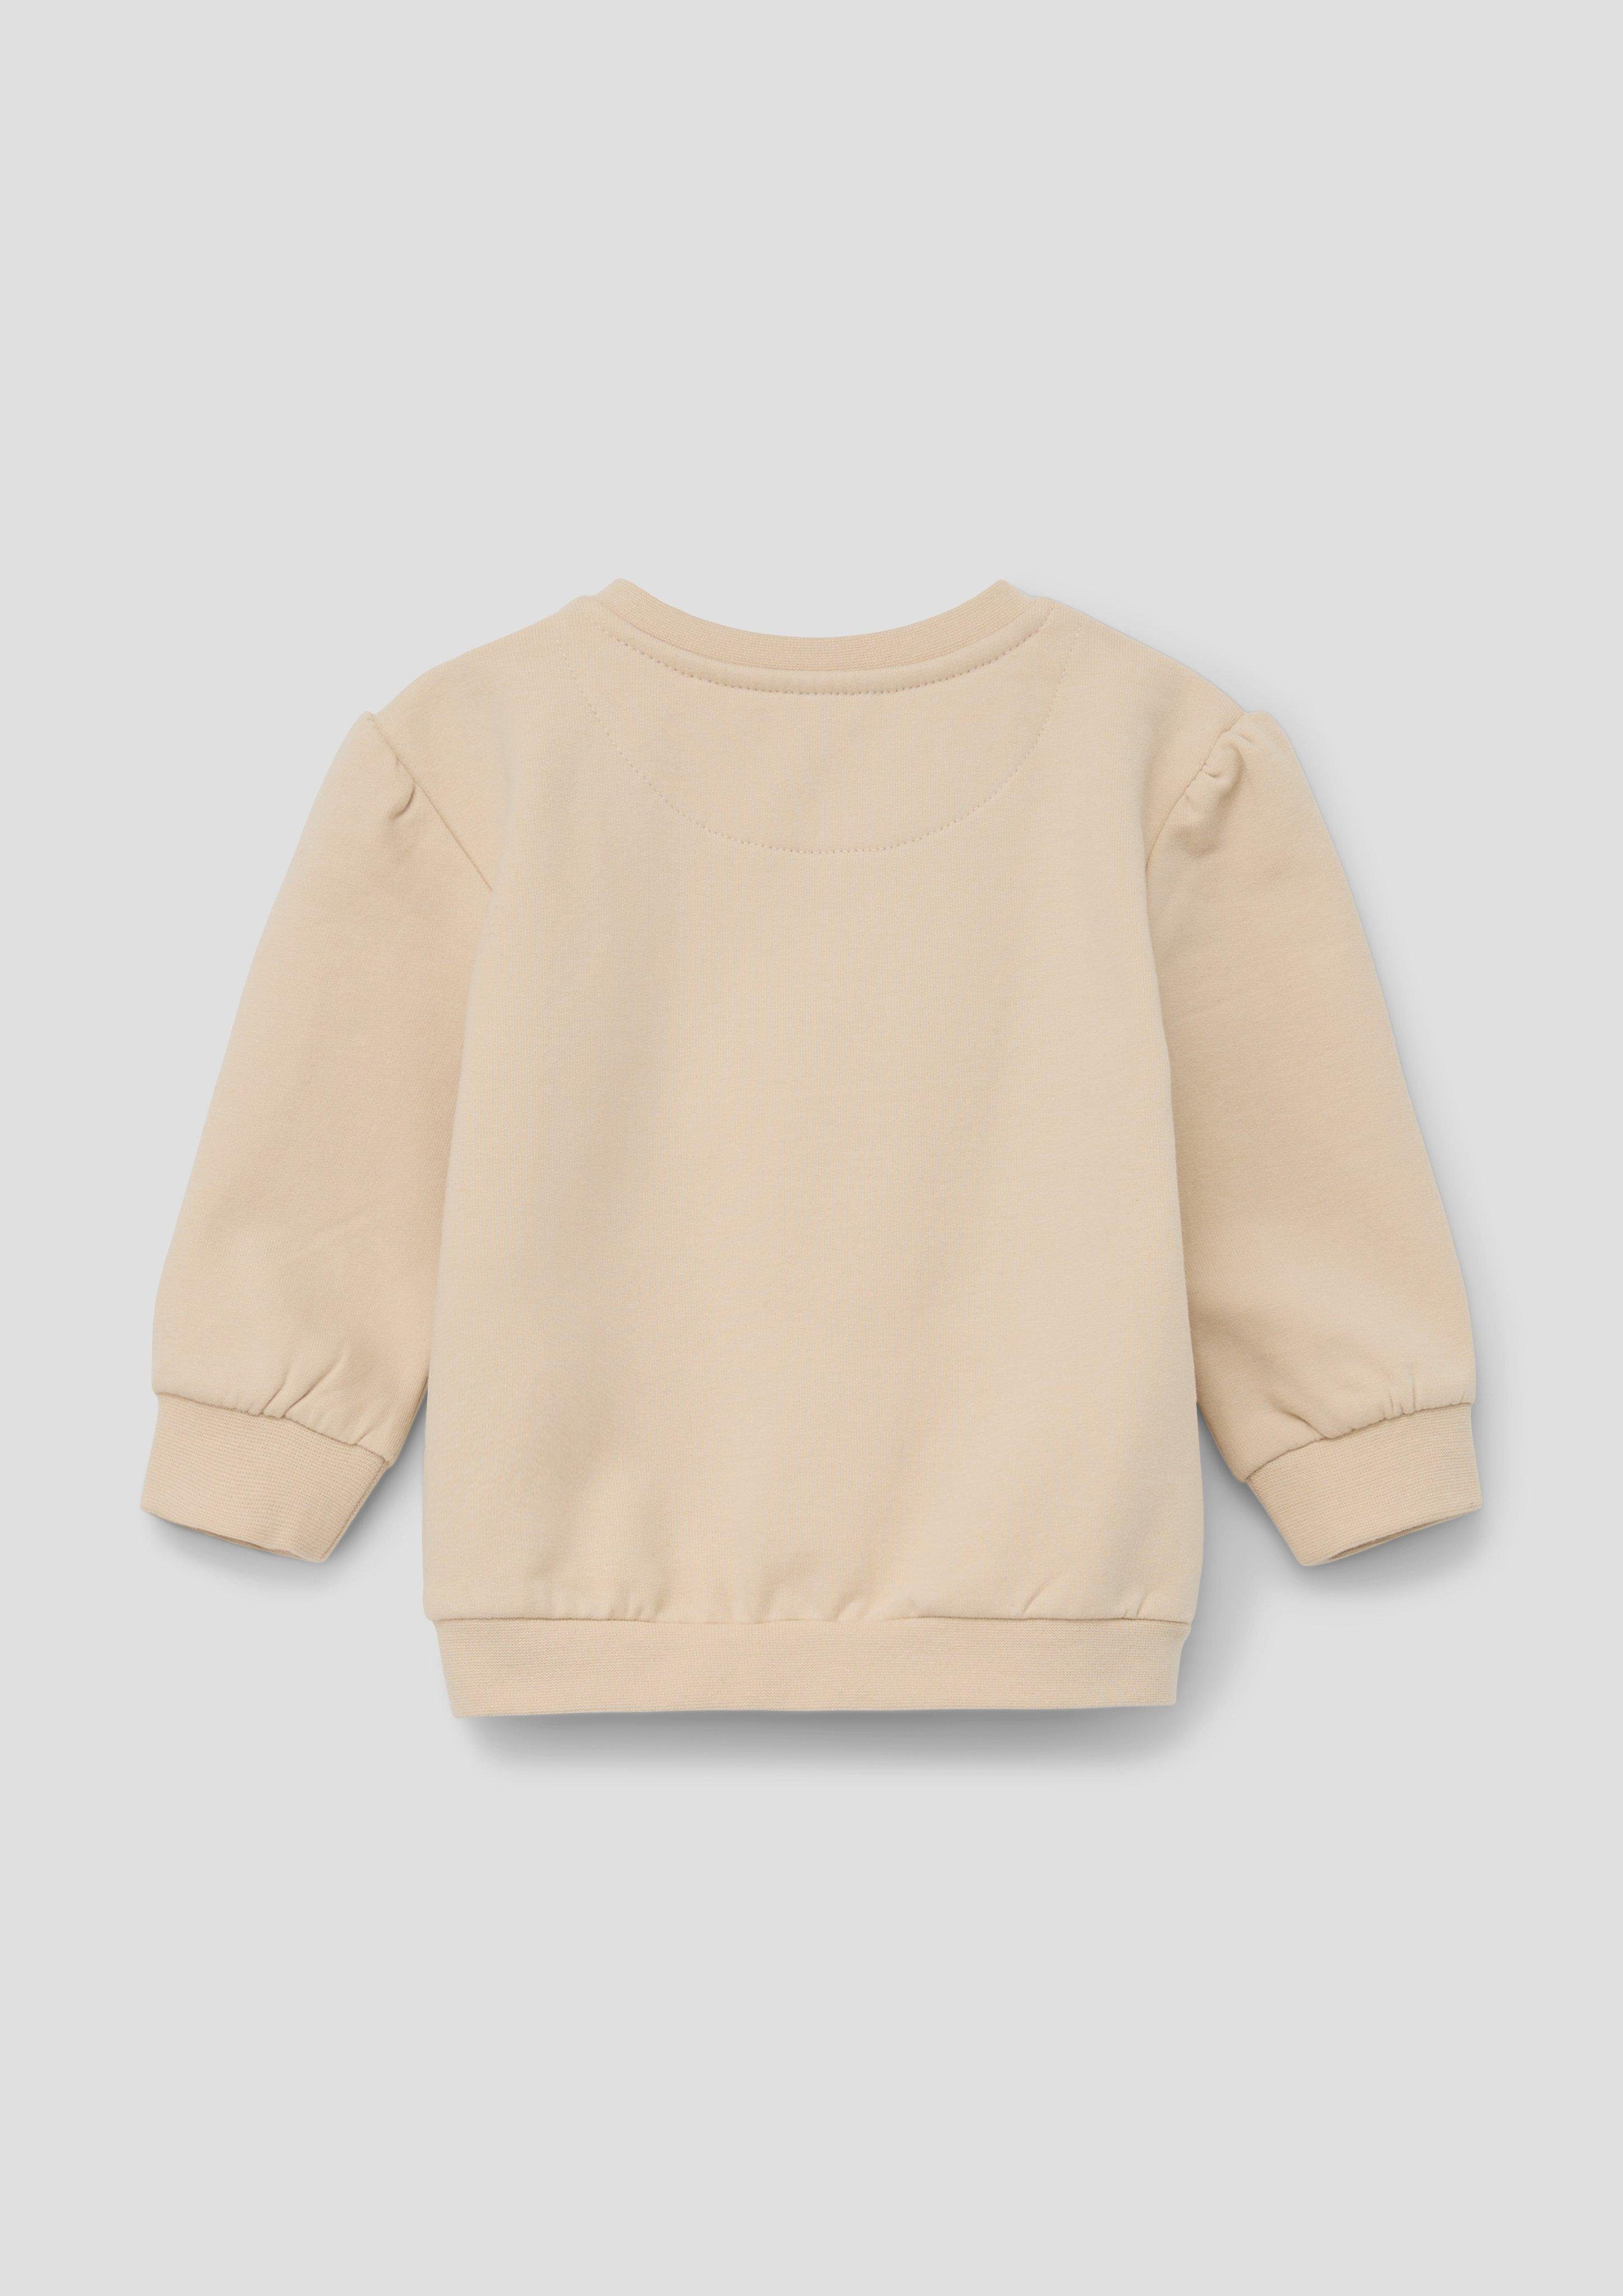 Pailletten, Sweatshirt s.Oliver beige Raffung mit Sweater Fransen, Frontprint